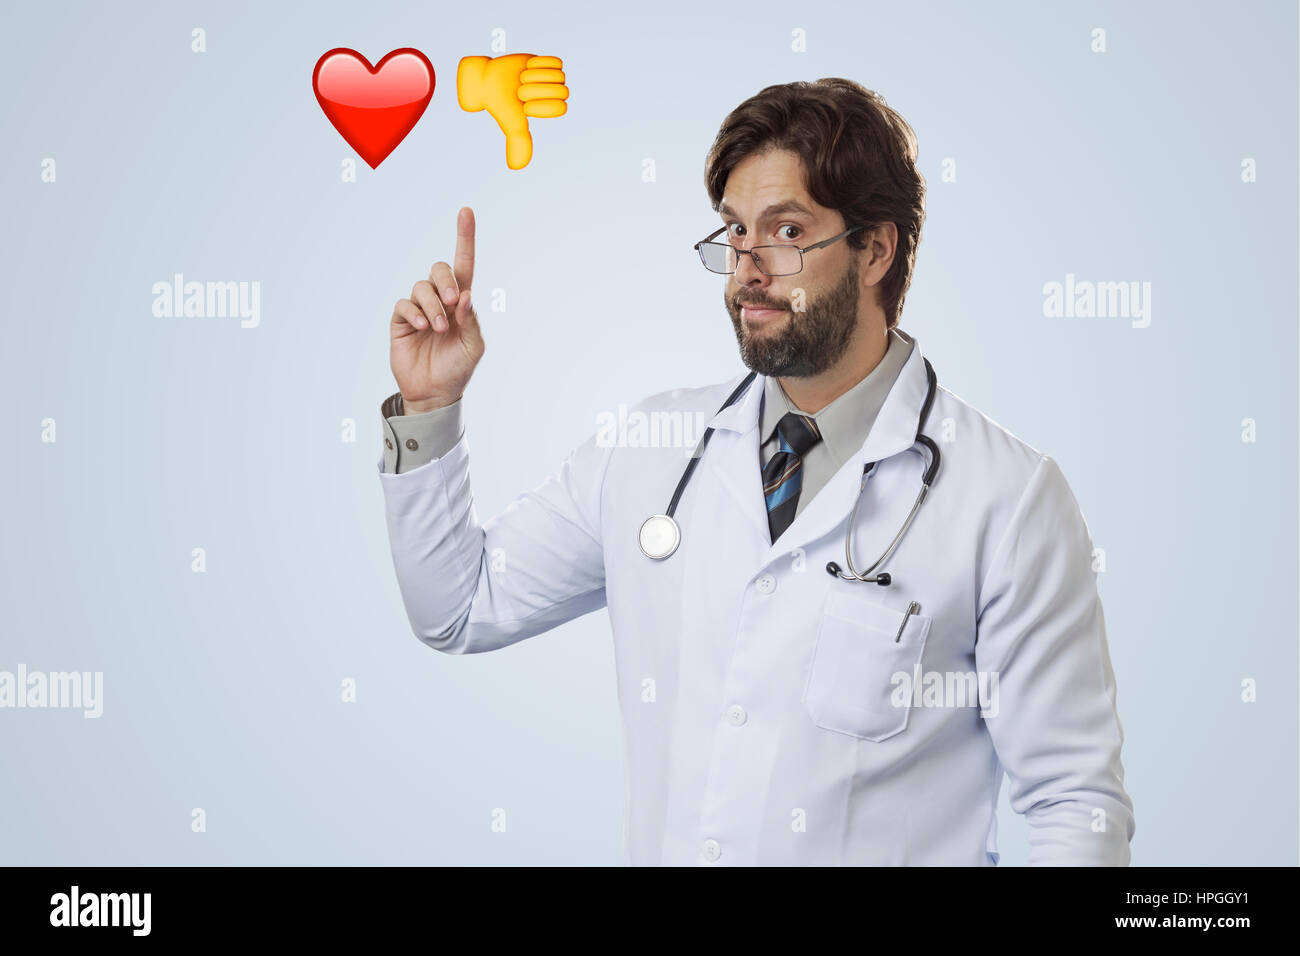 Männlichen Arzt auf einem grauen Hintergrund deuten einige Emojis. Stockfoto